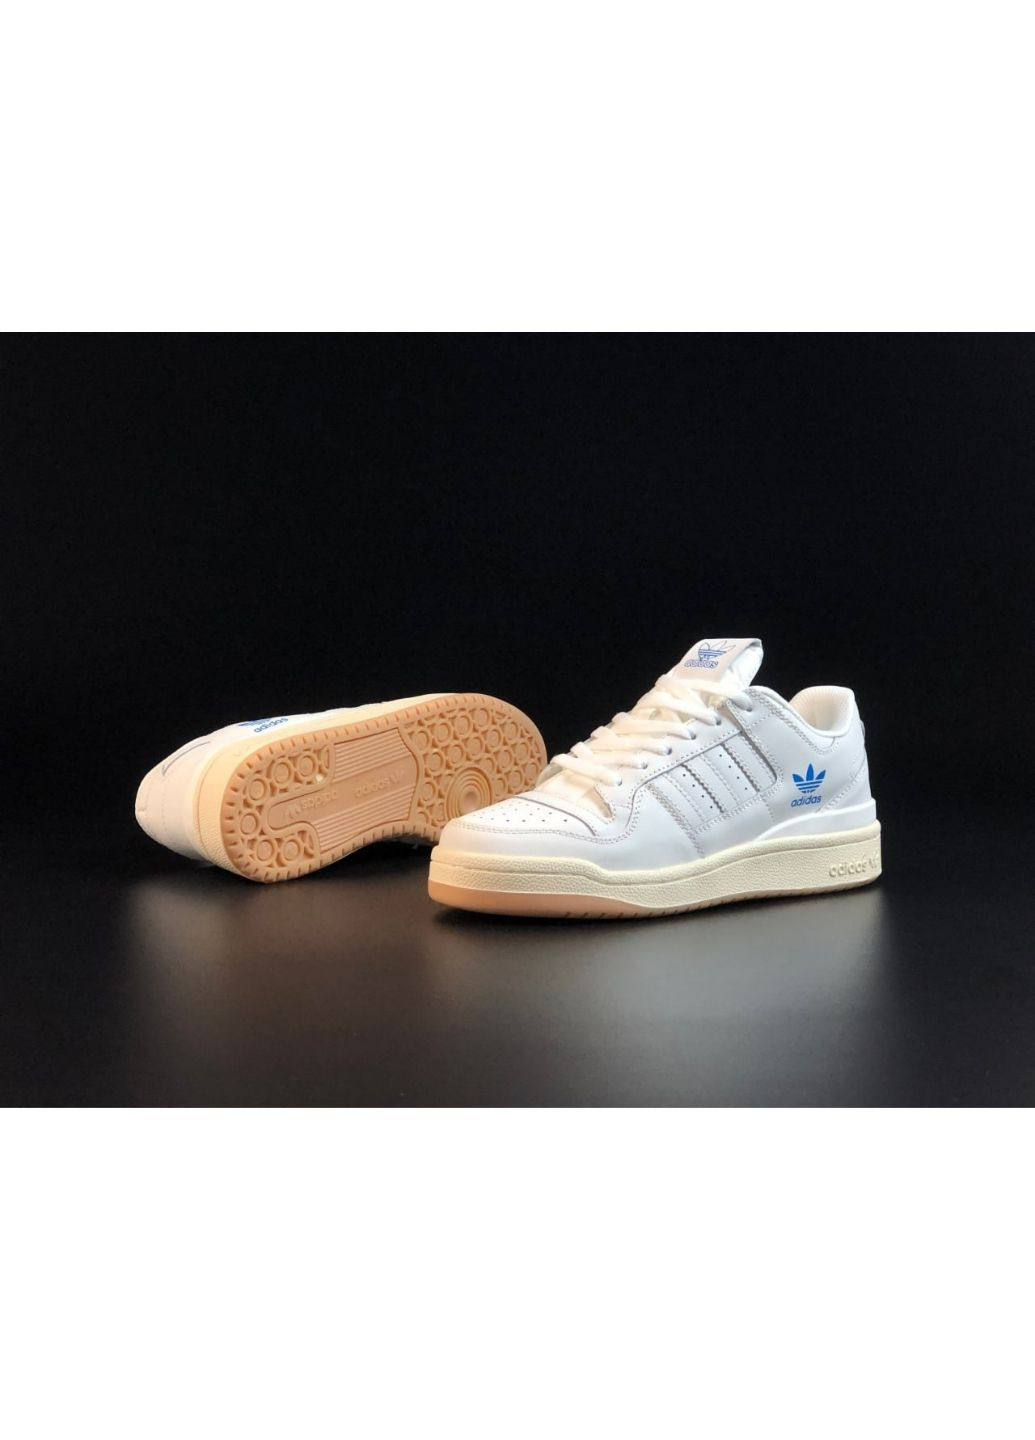 Белые демисезонные мужские кроссовки белые с бежевым «no name» adidas Forum Low